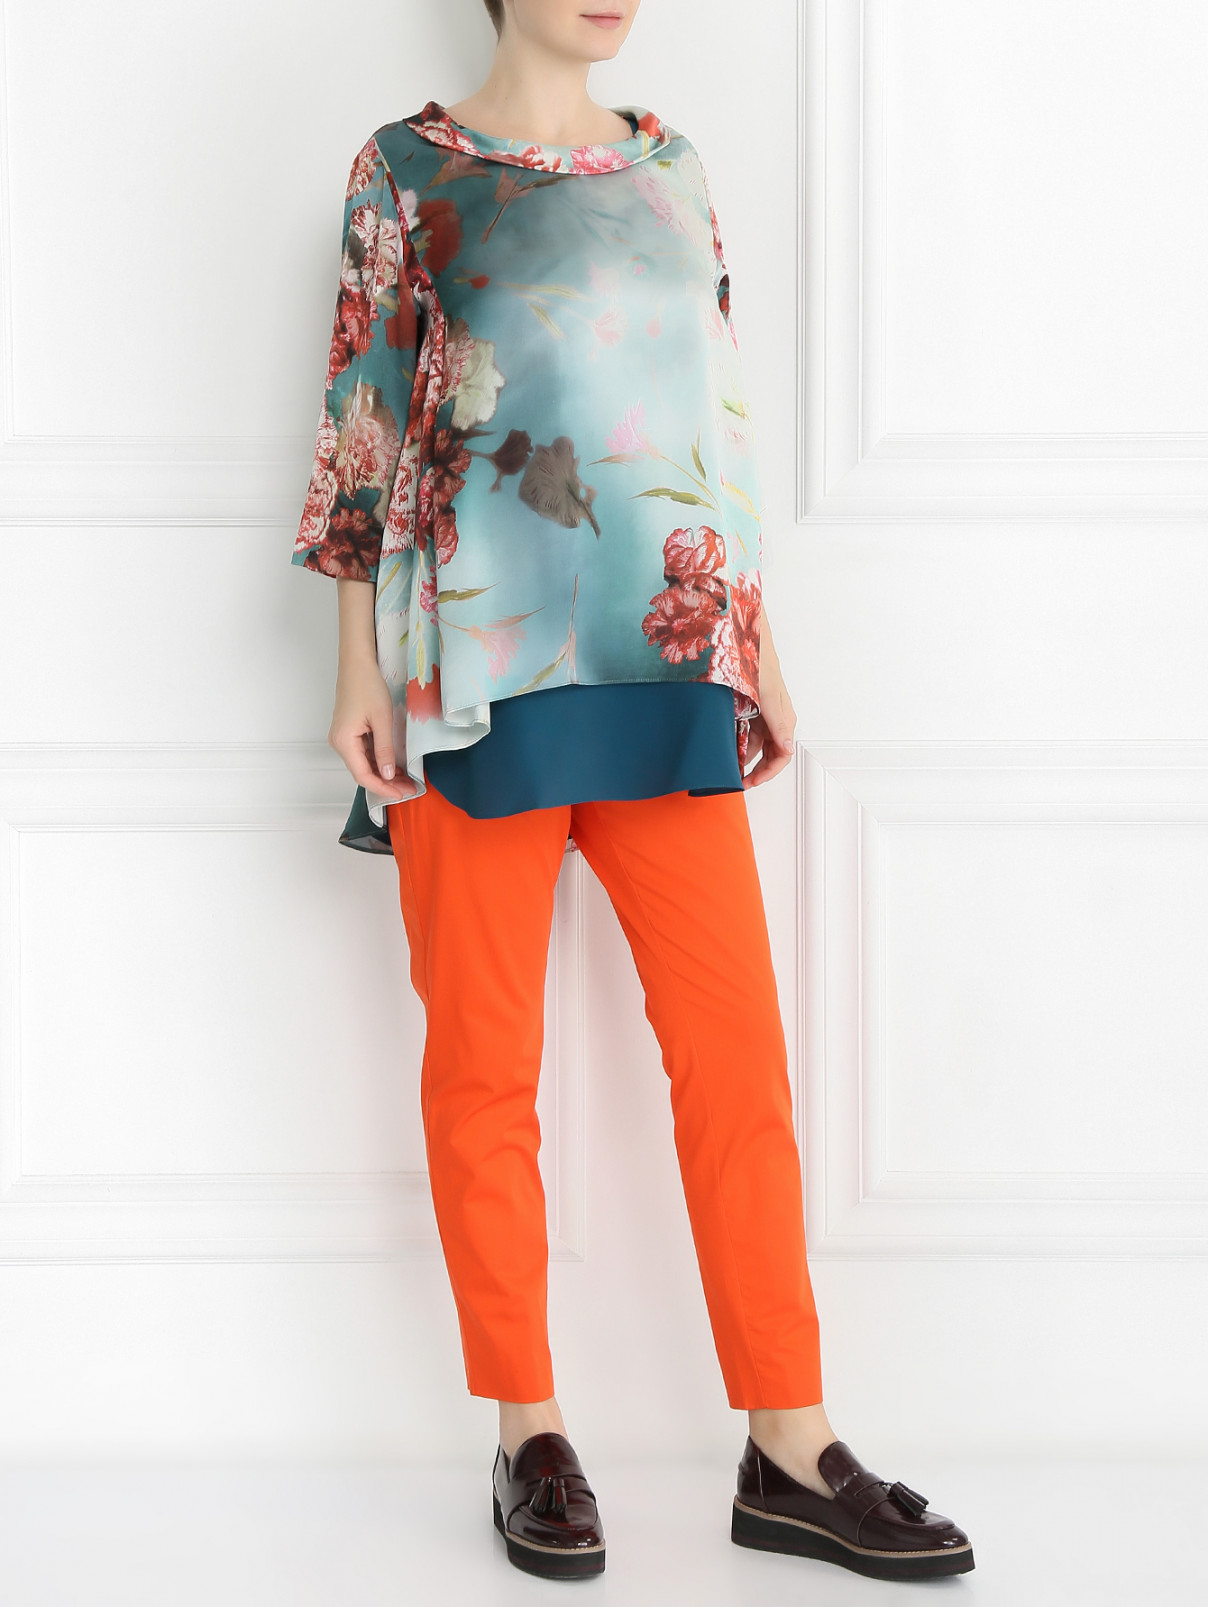 Блуза из шелка с узором Marina Rinaldi  –  Модель Общий вид  – Цвет:  Синий